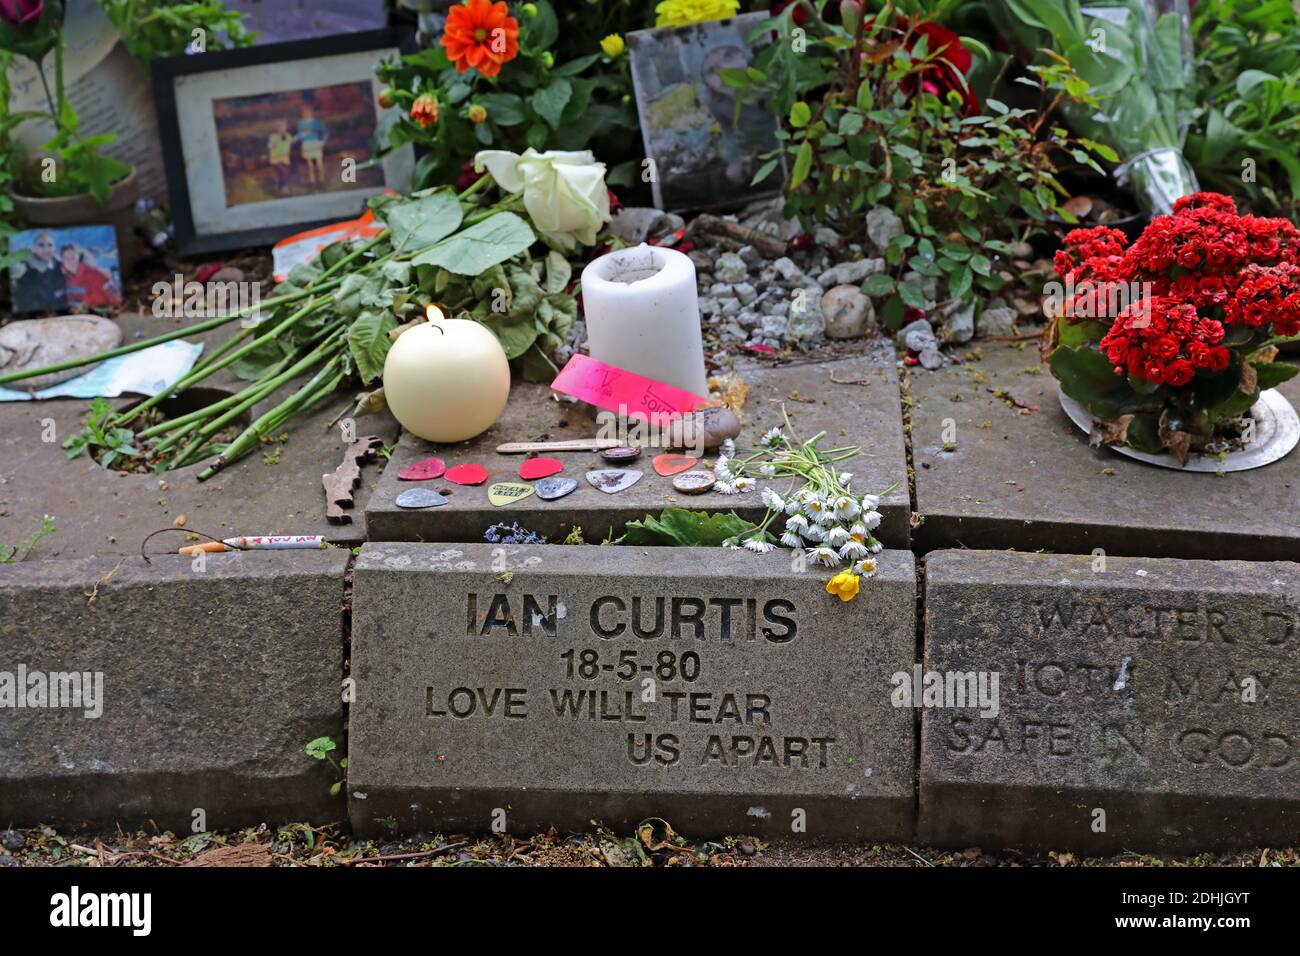 Ian Curtis Memorial Stone au crématorium de Macclesfield, Prestbury Road, Cheshire, Angleterre, Royaume-Uni, SK10, étiquette d'usine, Joy Division chanteur, auteur de chansons Banque D'Images